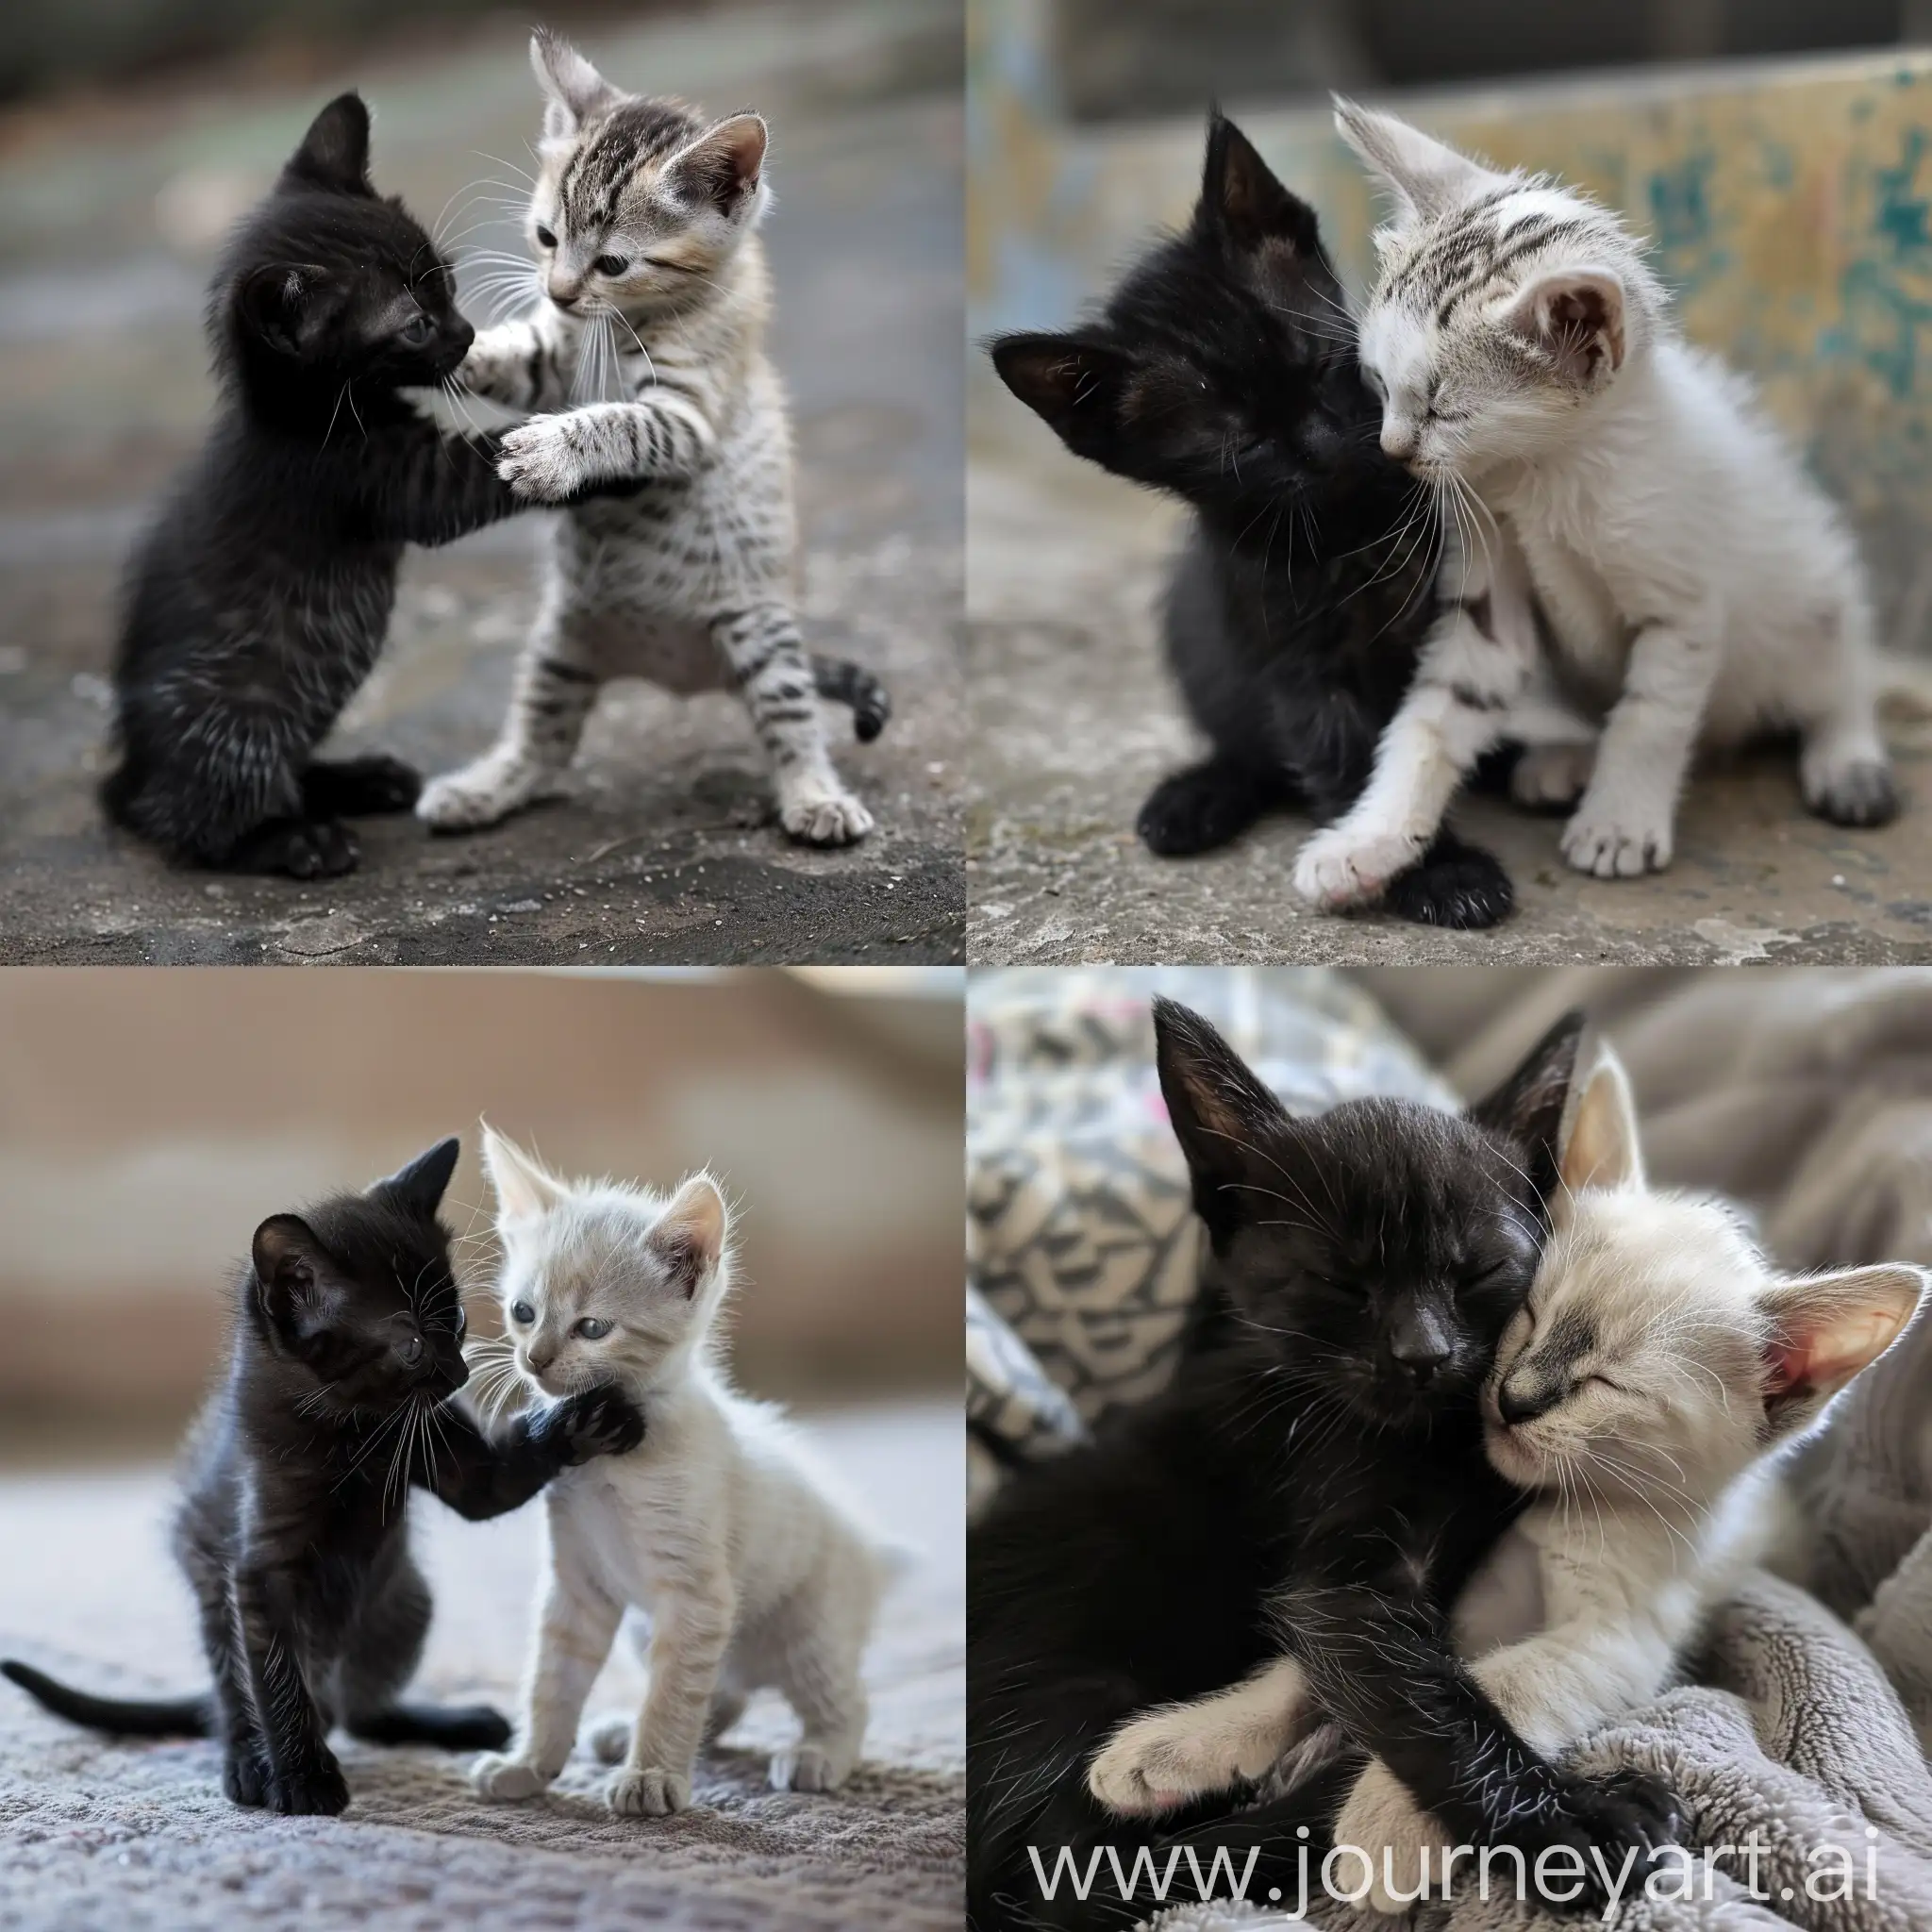 два котика: один - черный, другой - белый, играются друг с другом